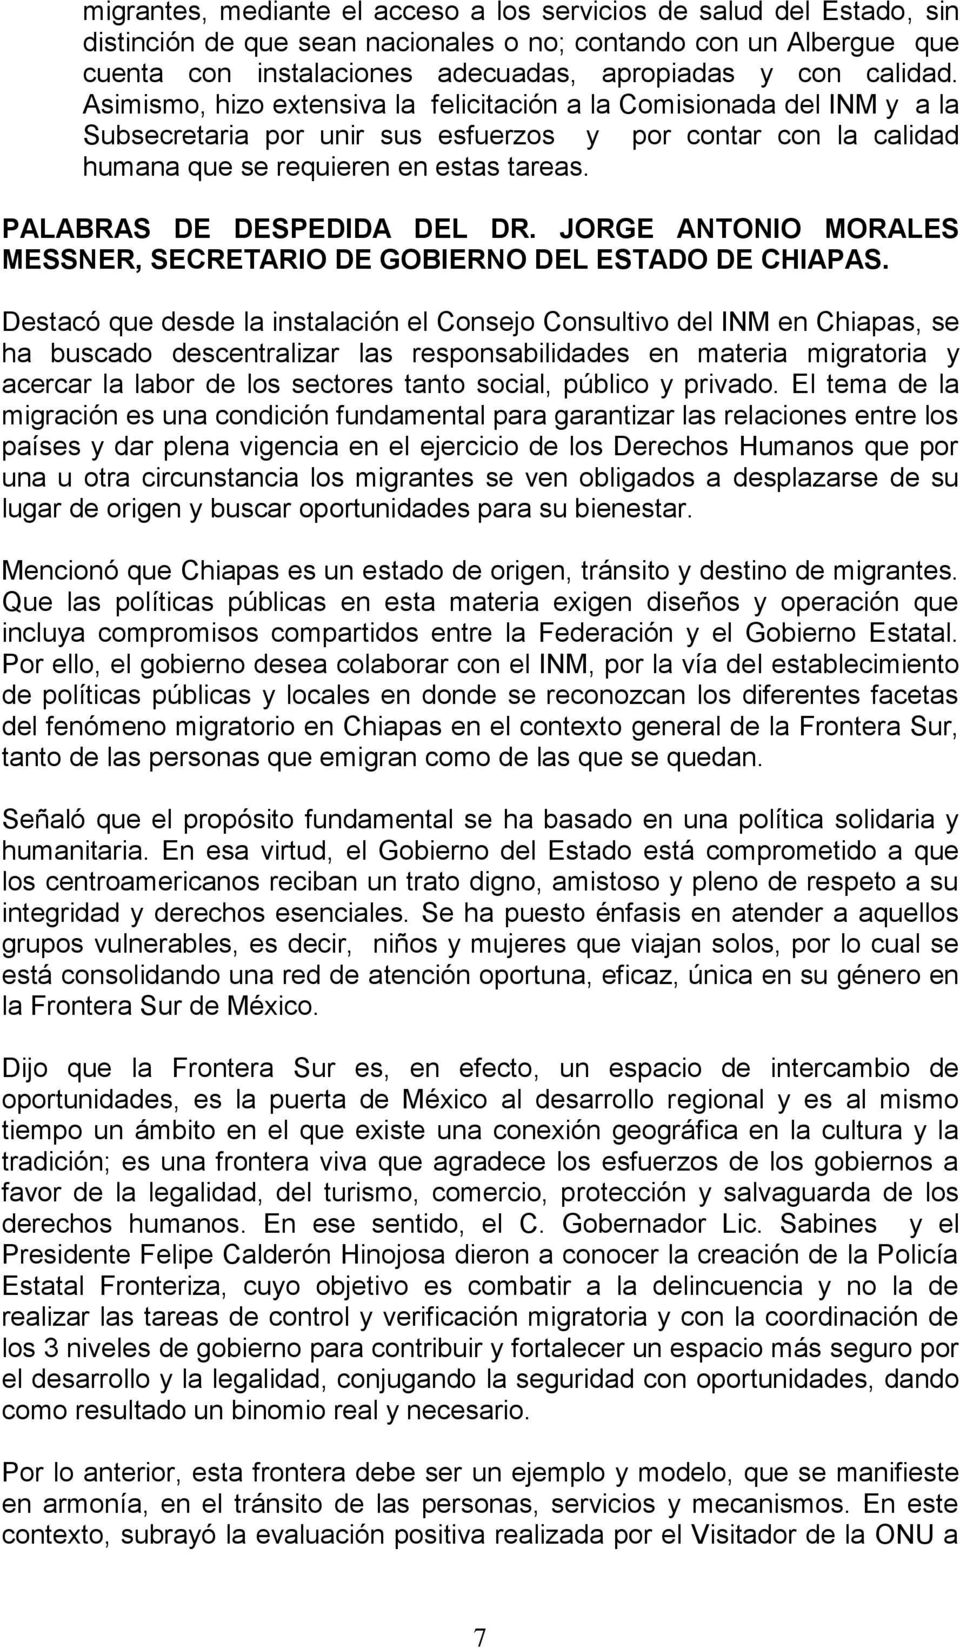 PALABRAS DE DESPEDIDA DEL DR. JORGE ANTONIO MORALES MESSNER, SECRETARIO DE GOBIERNO DEL ESTADO DE CHIAPAS.